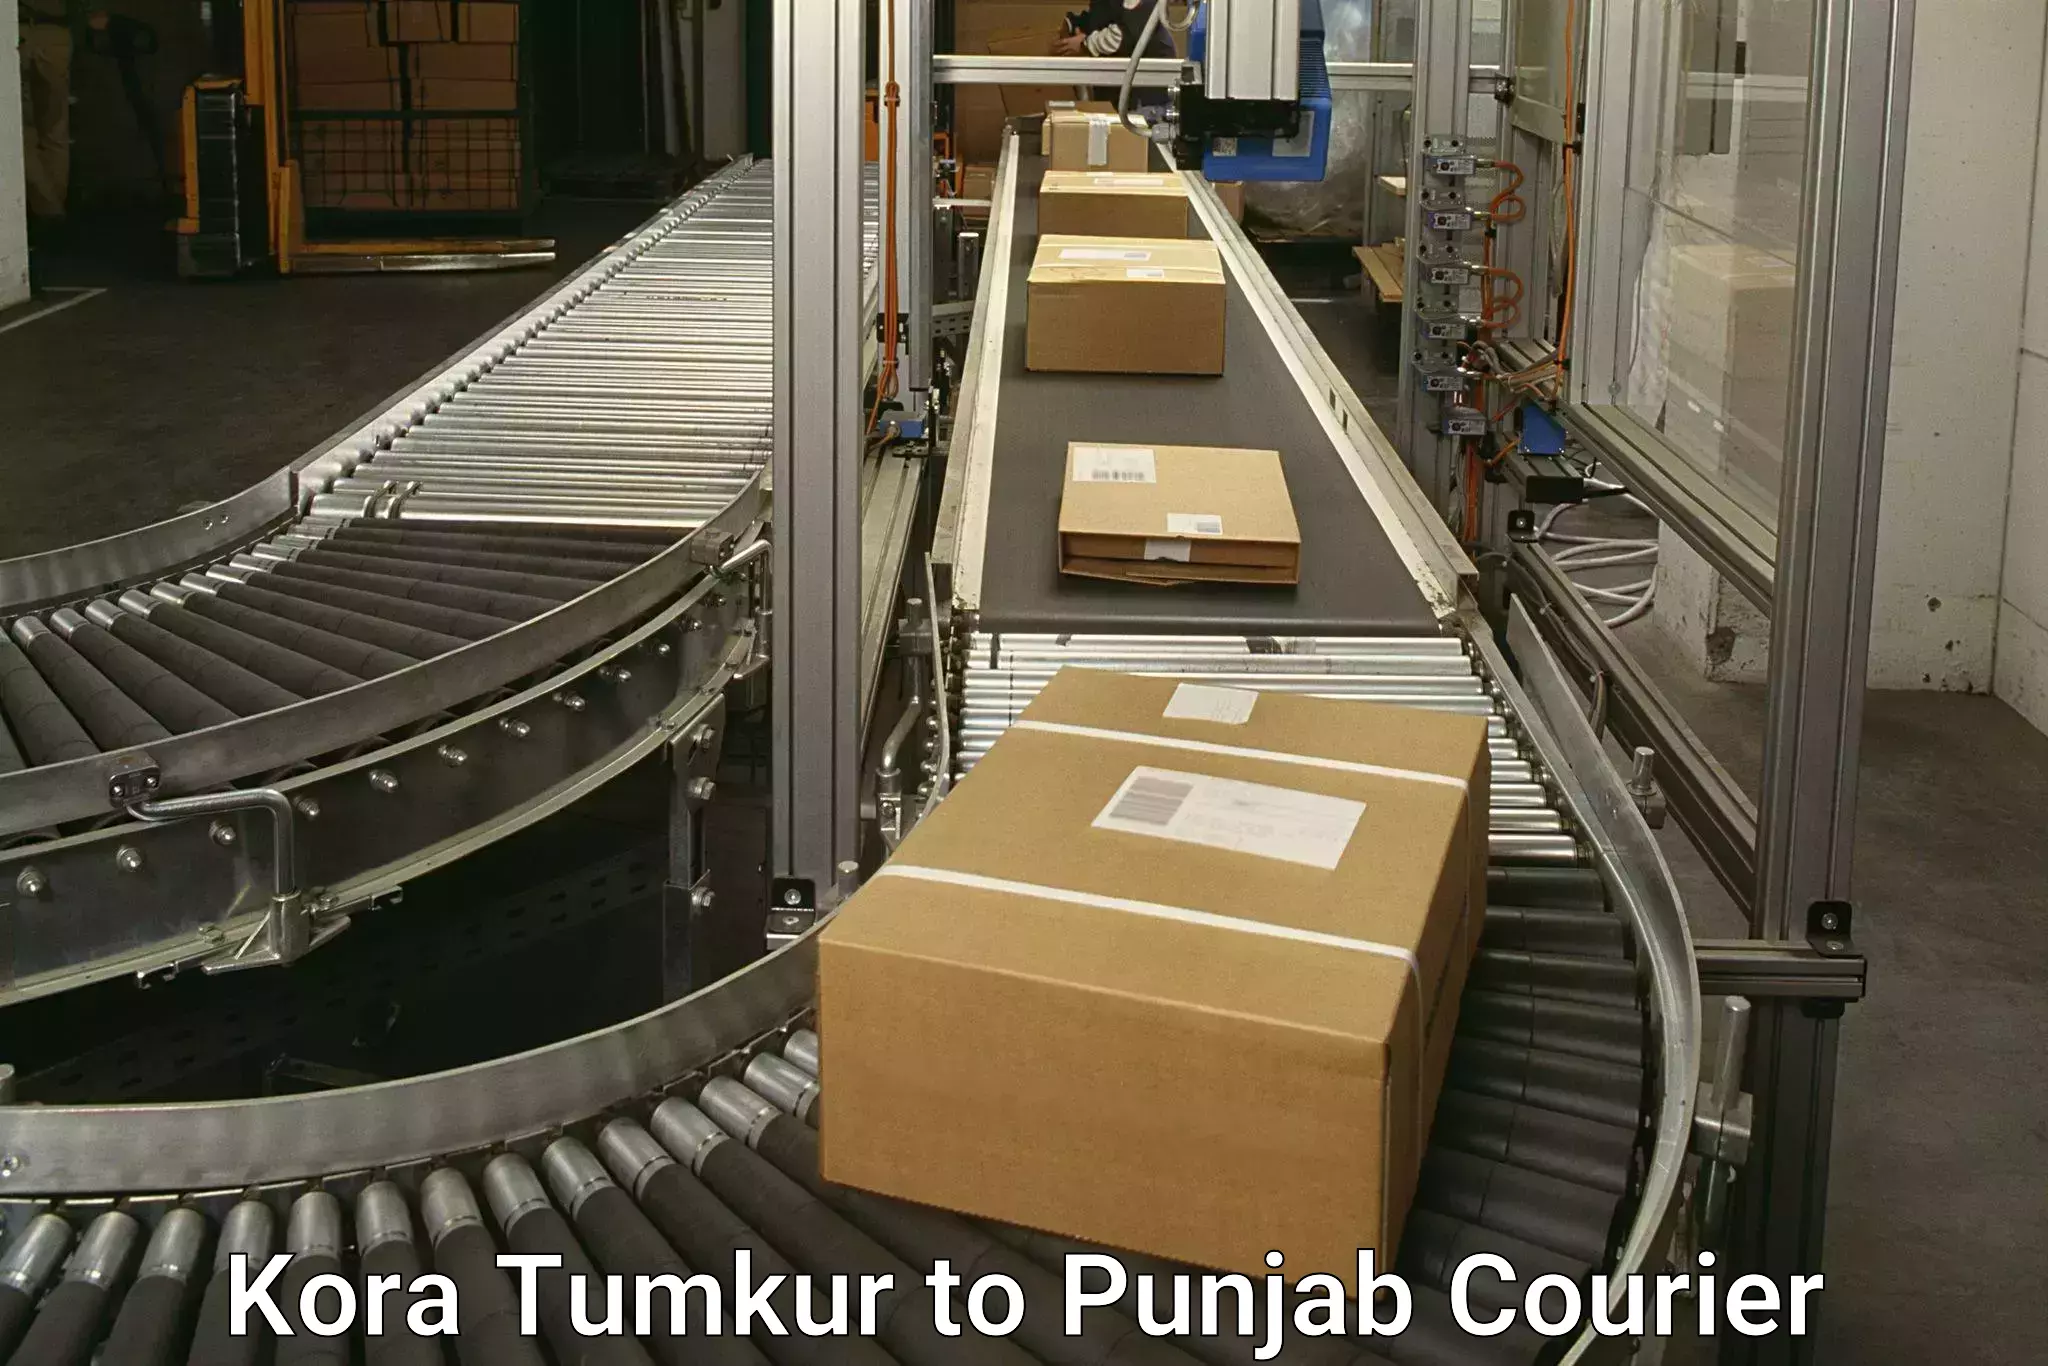 Courier dispatch services Kora Tumkur to Faridkot